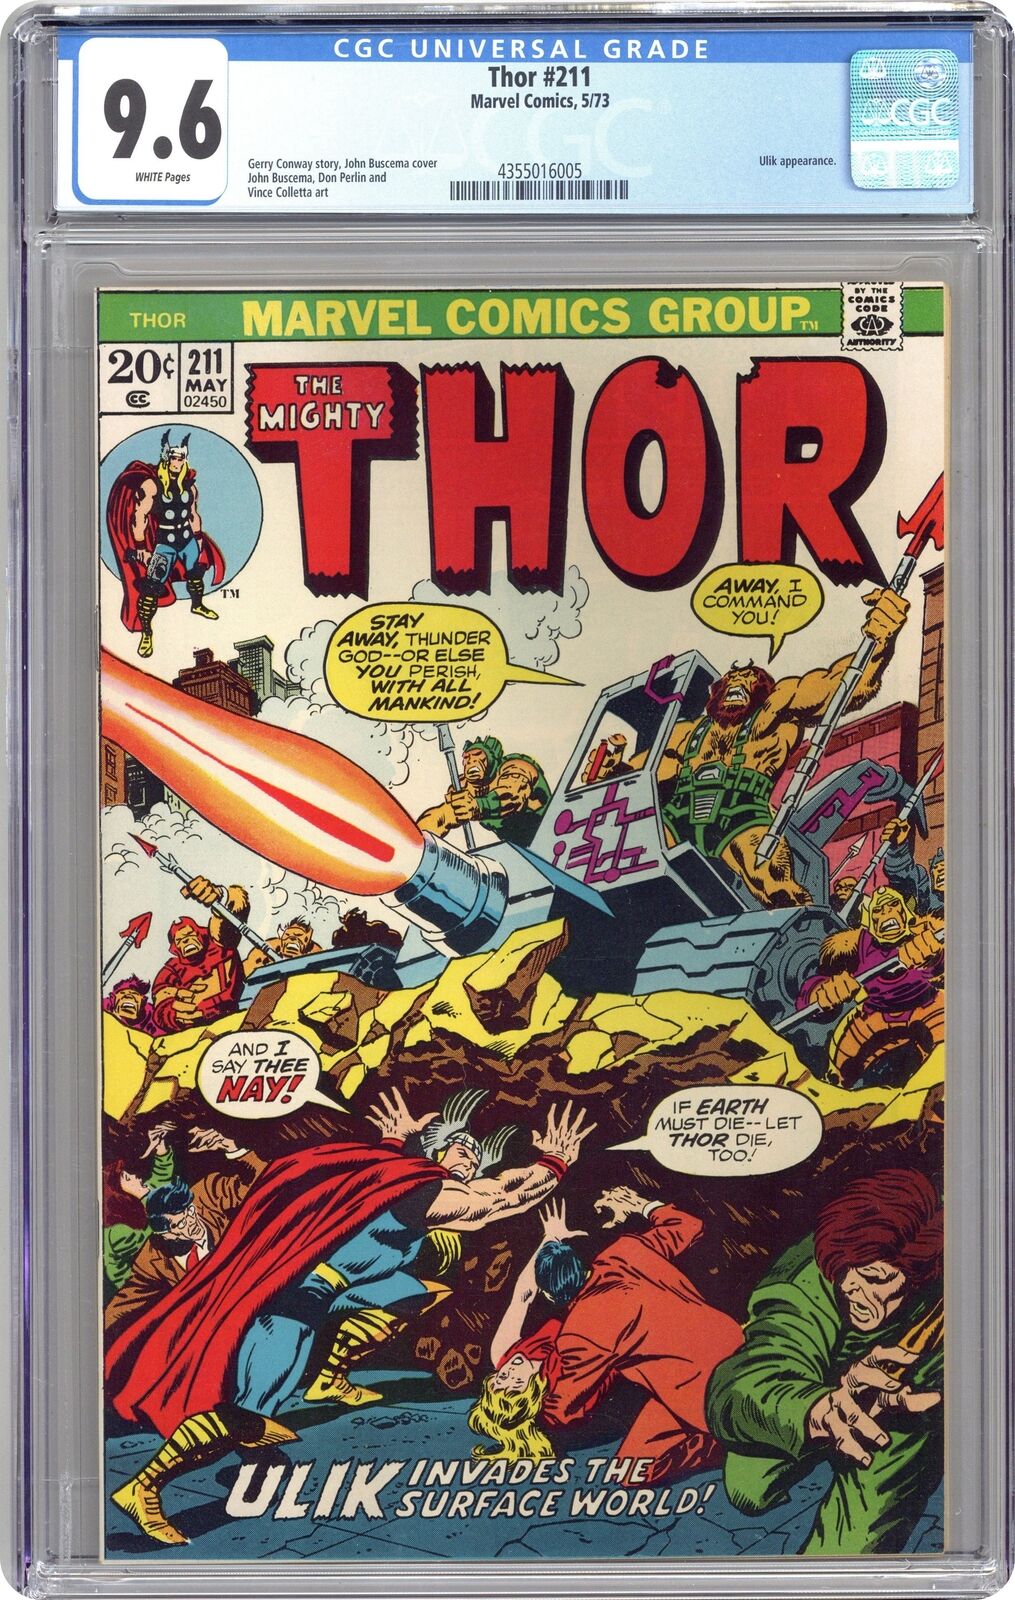 Thor #211 CGC 9.6 1973 4355016005